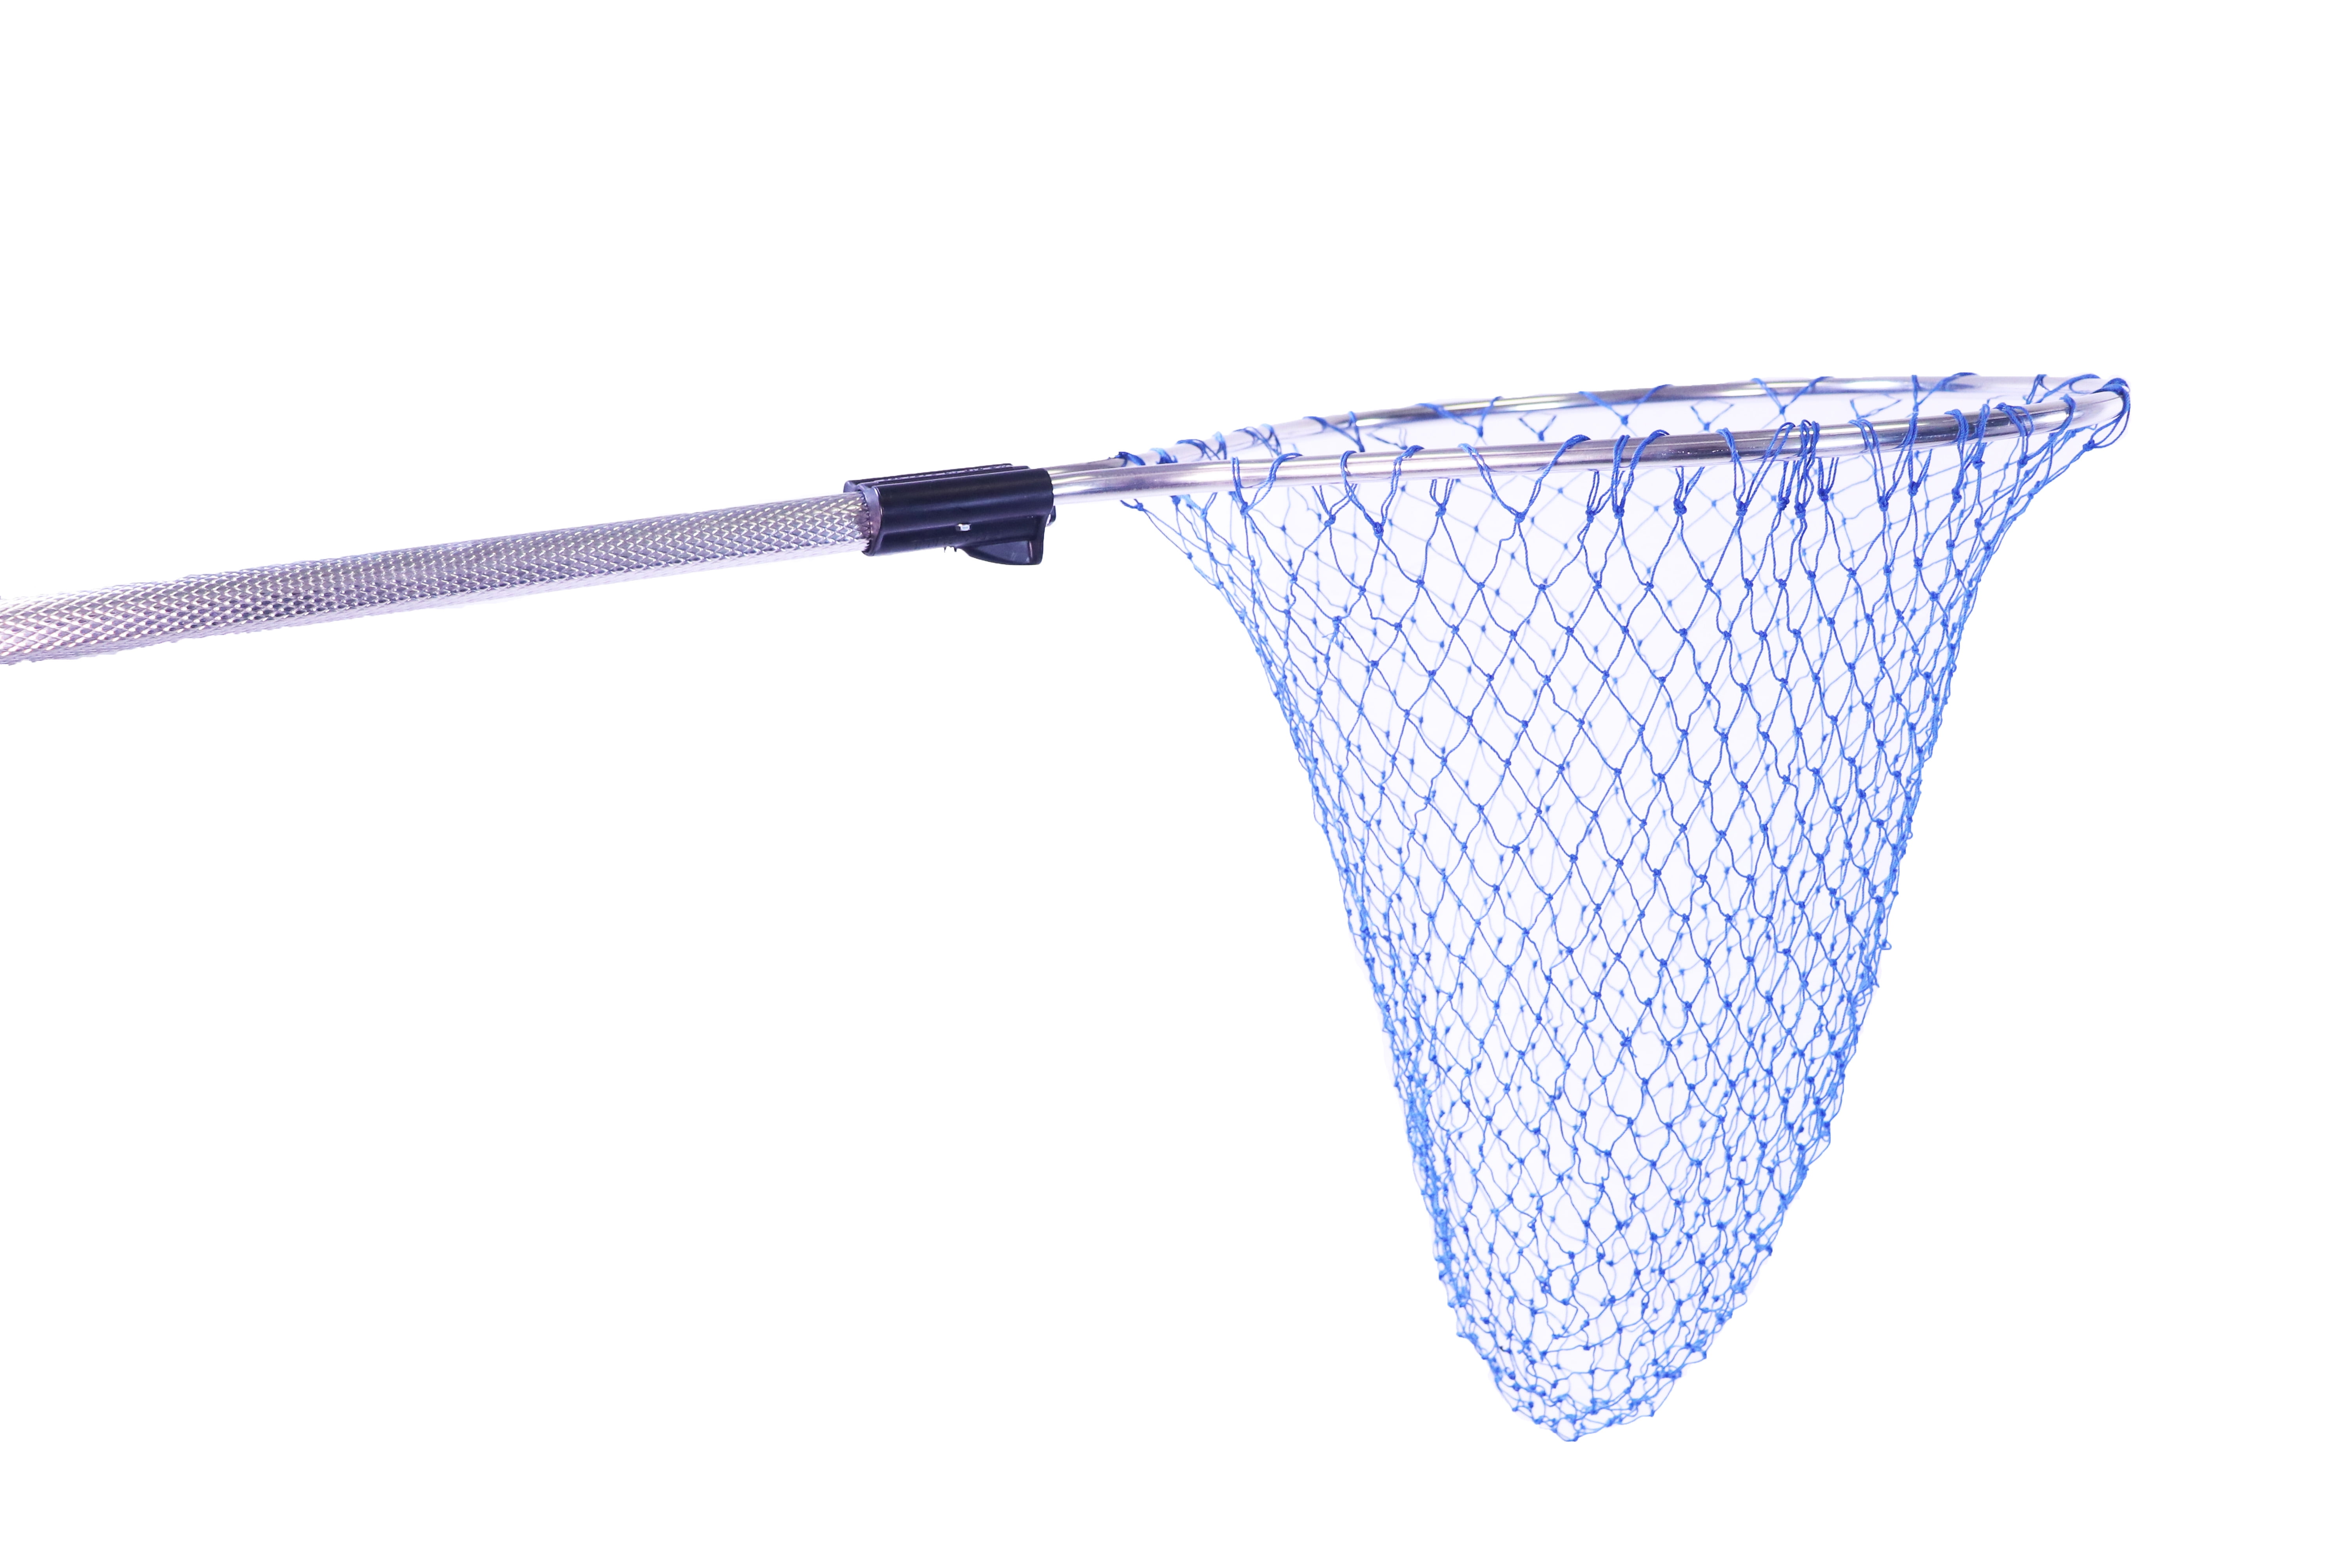 Frabill Sportsman Rubber Net | Premium Landing Net Designed for Freshwater  Fishing